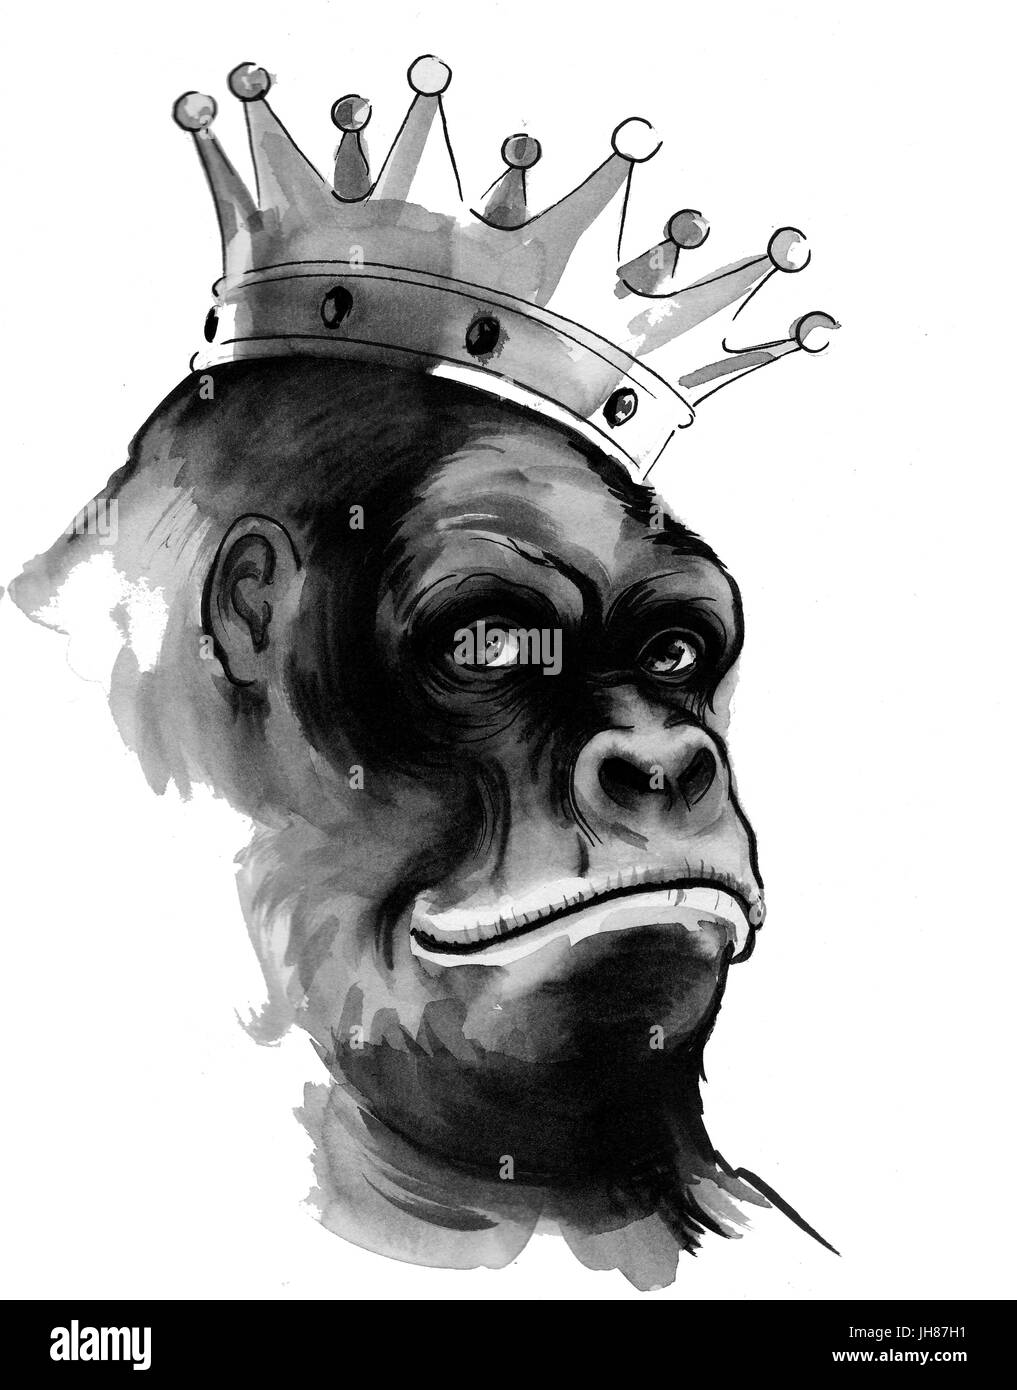 Gorilla king Stock Photo